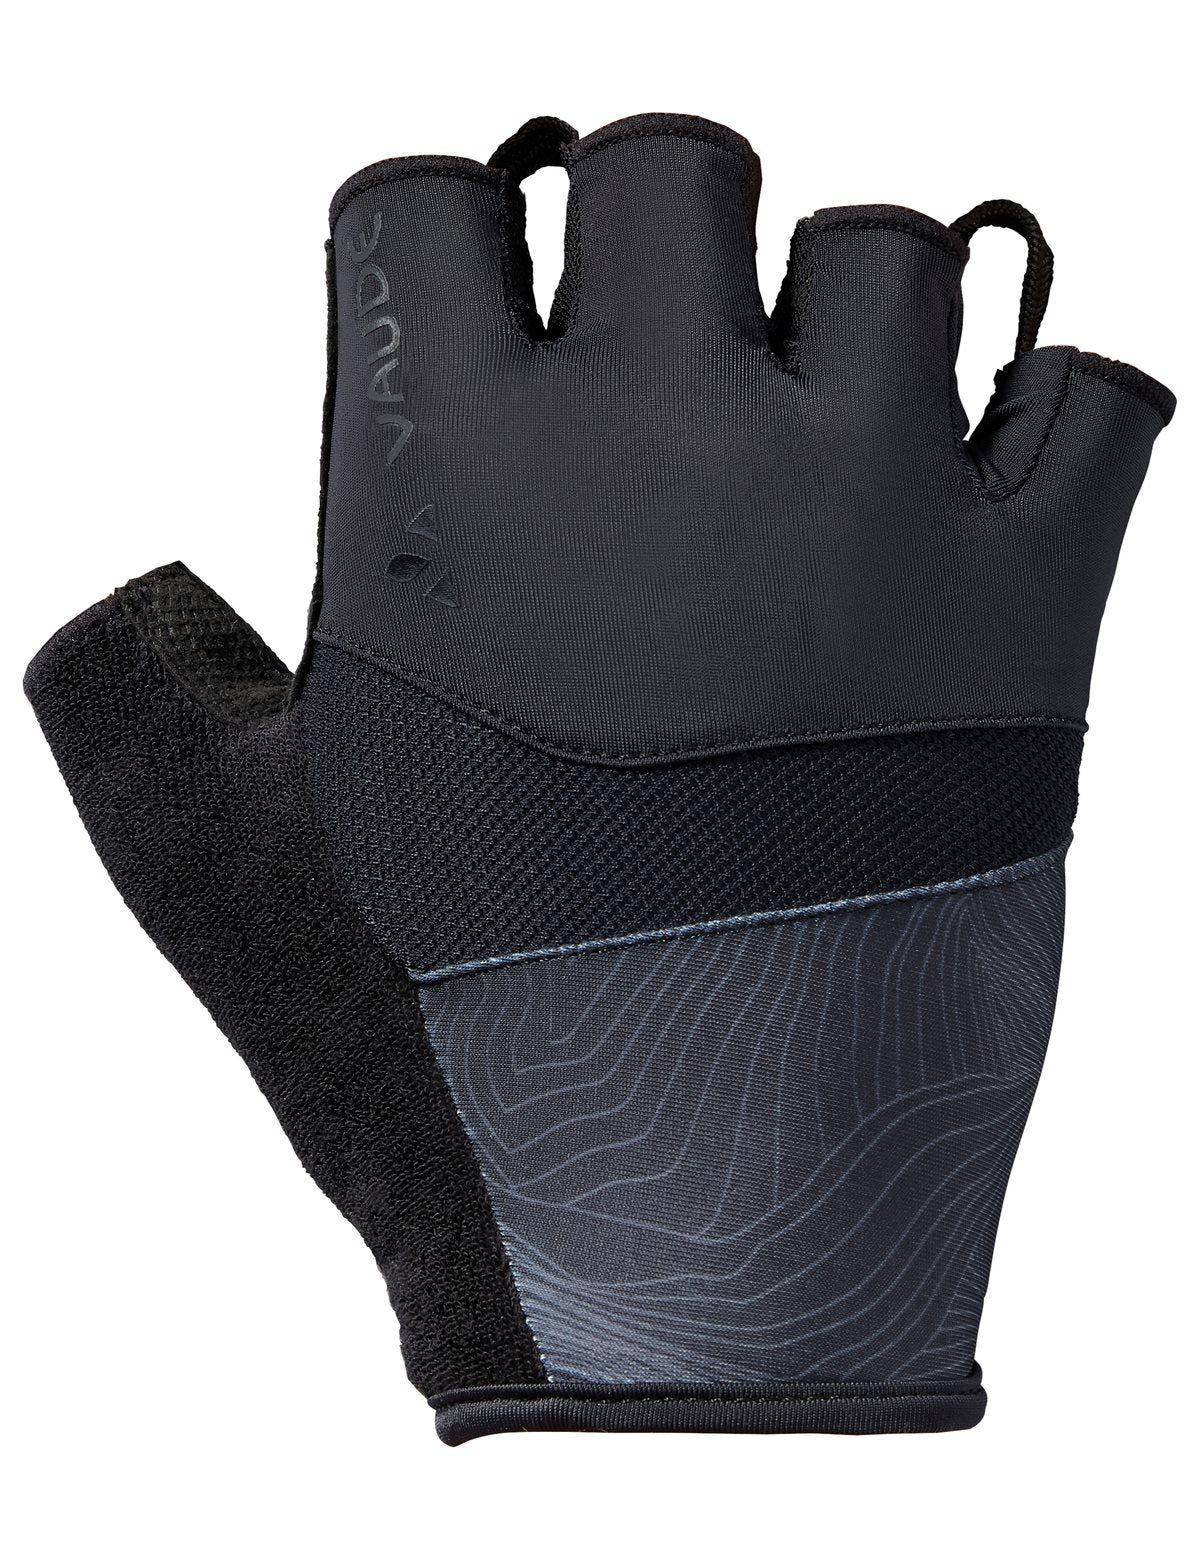 Vaude Men's Advanced Gloves II - Black Small Fietshandschoenen - Reisartikelen-nl